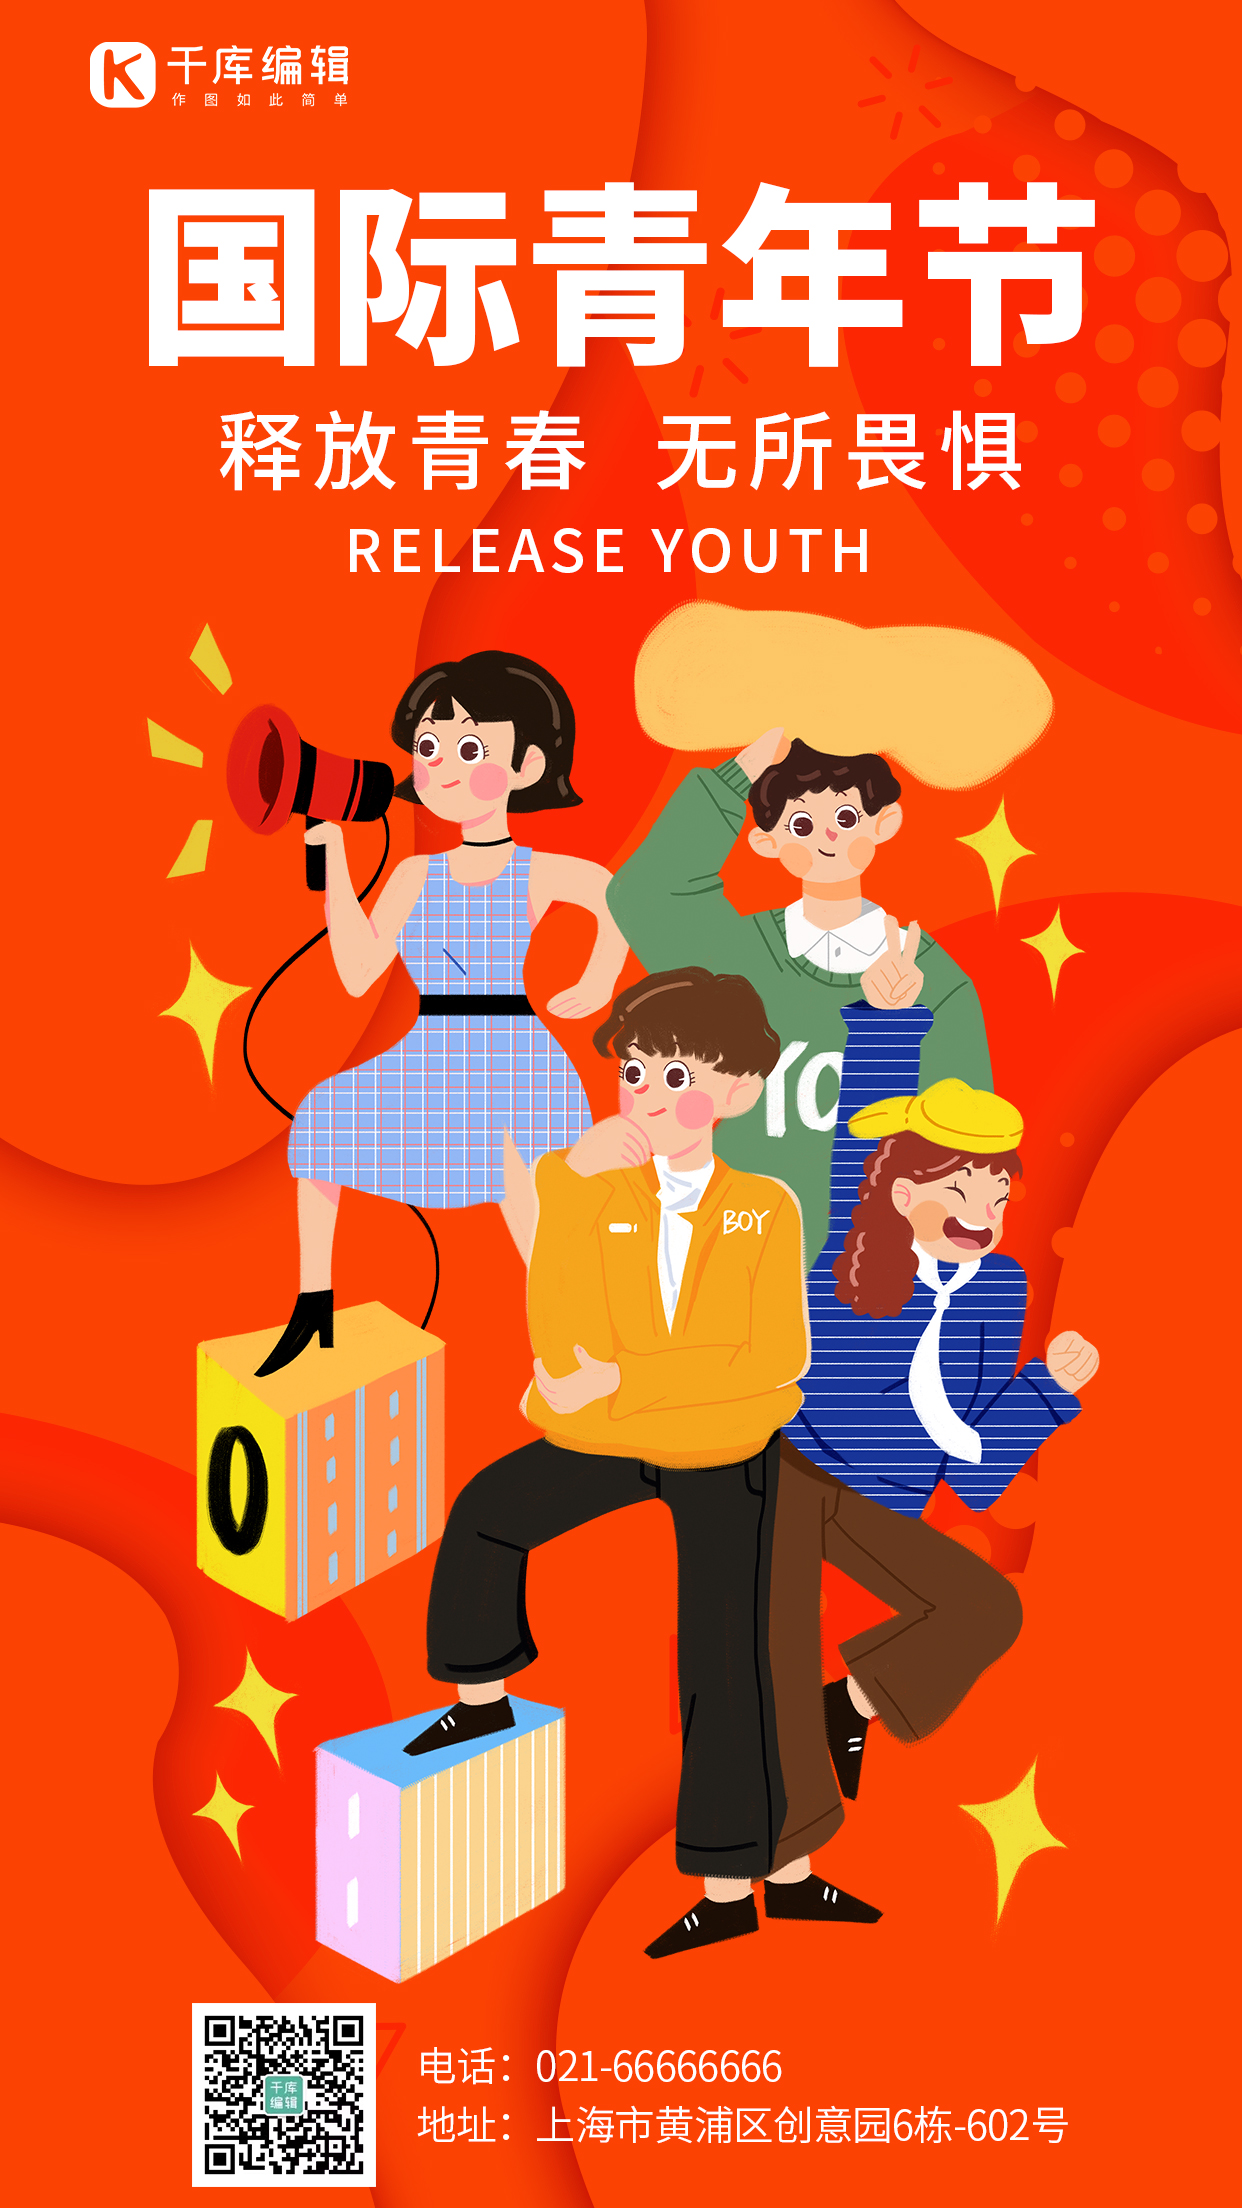 国际青年节释放青春红色卡通手机海报图片